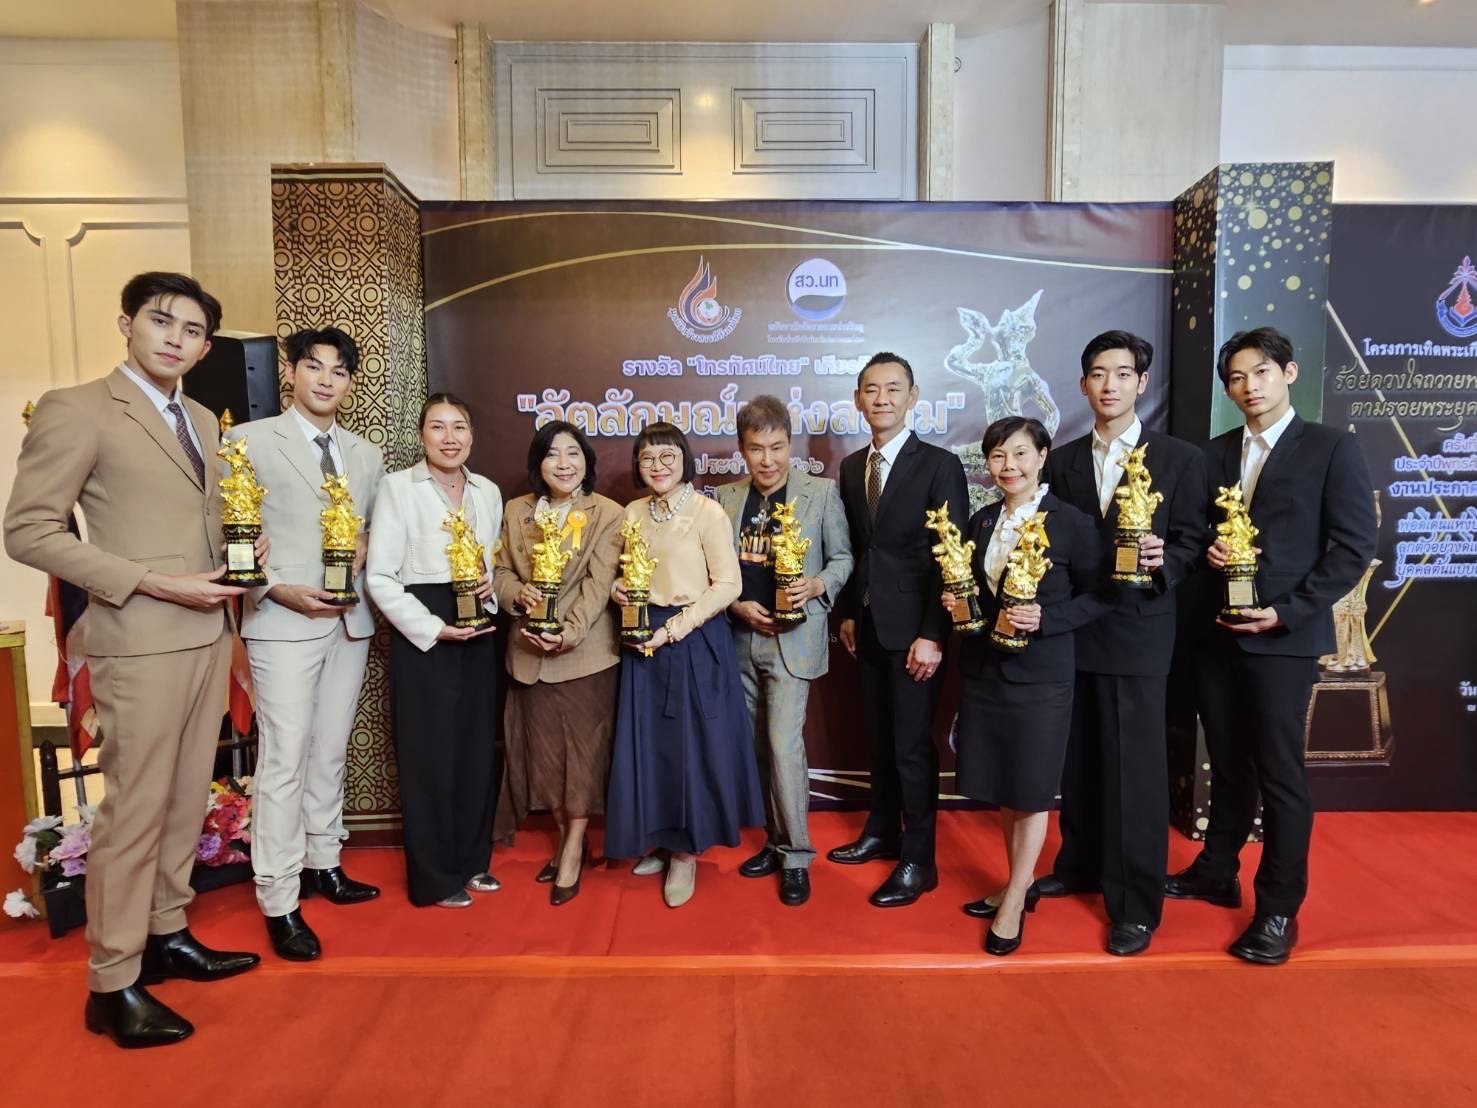 บีอีซี รับรางวัล “โทรทัศน์ไทย” เกียรติคุณ “อัตลักษณ์แห่งสยาม” ประจำปี 2566